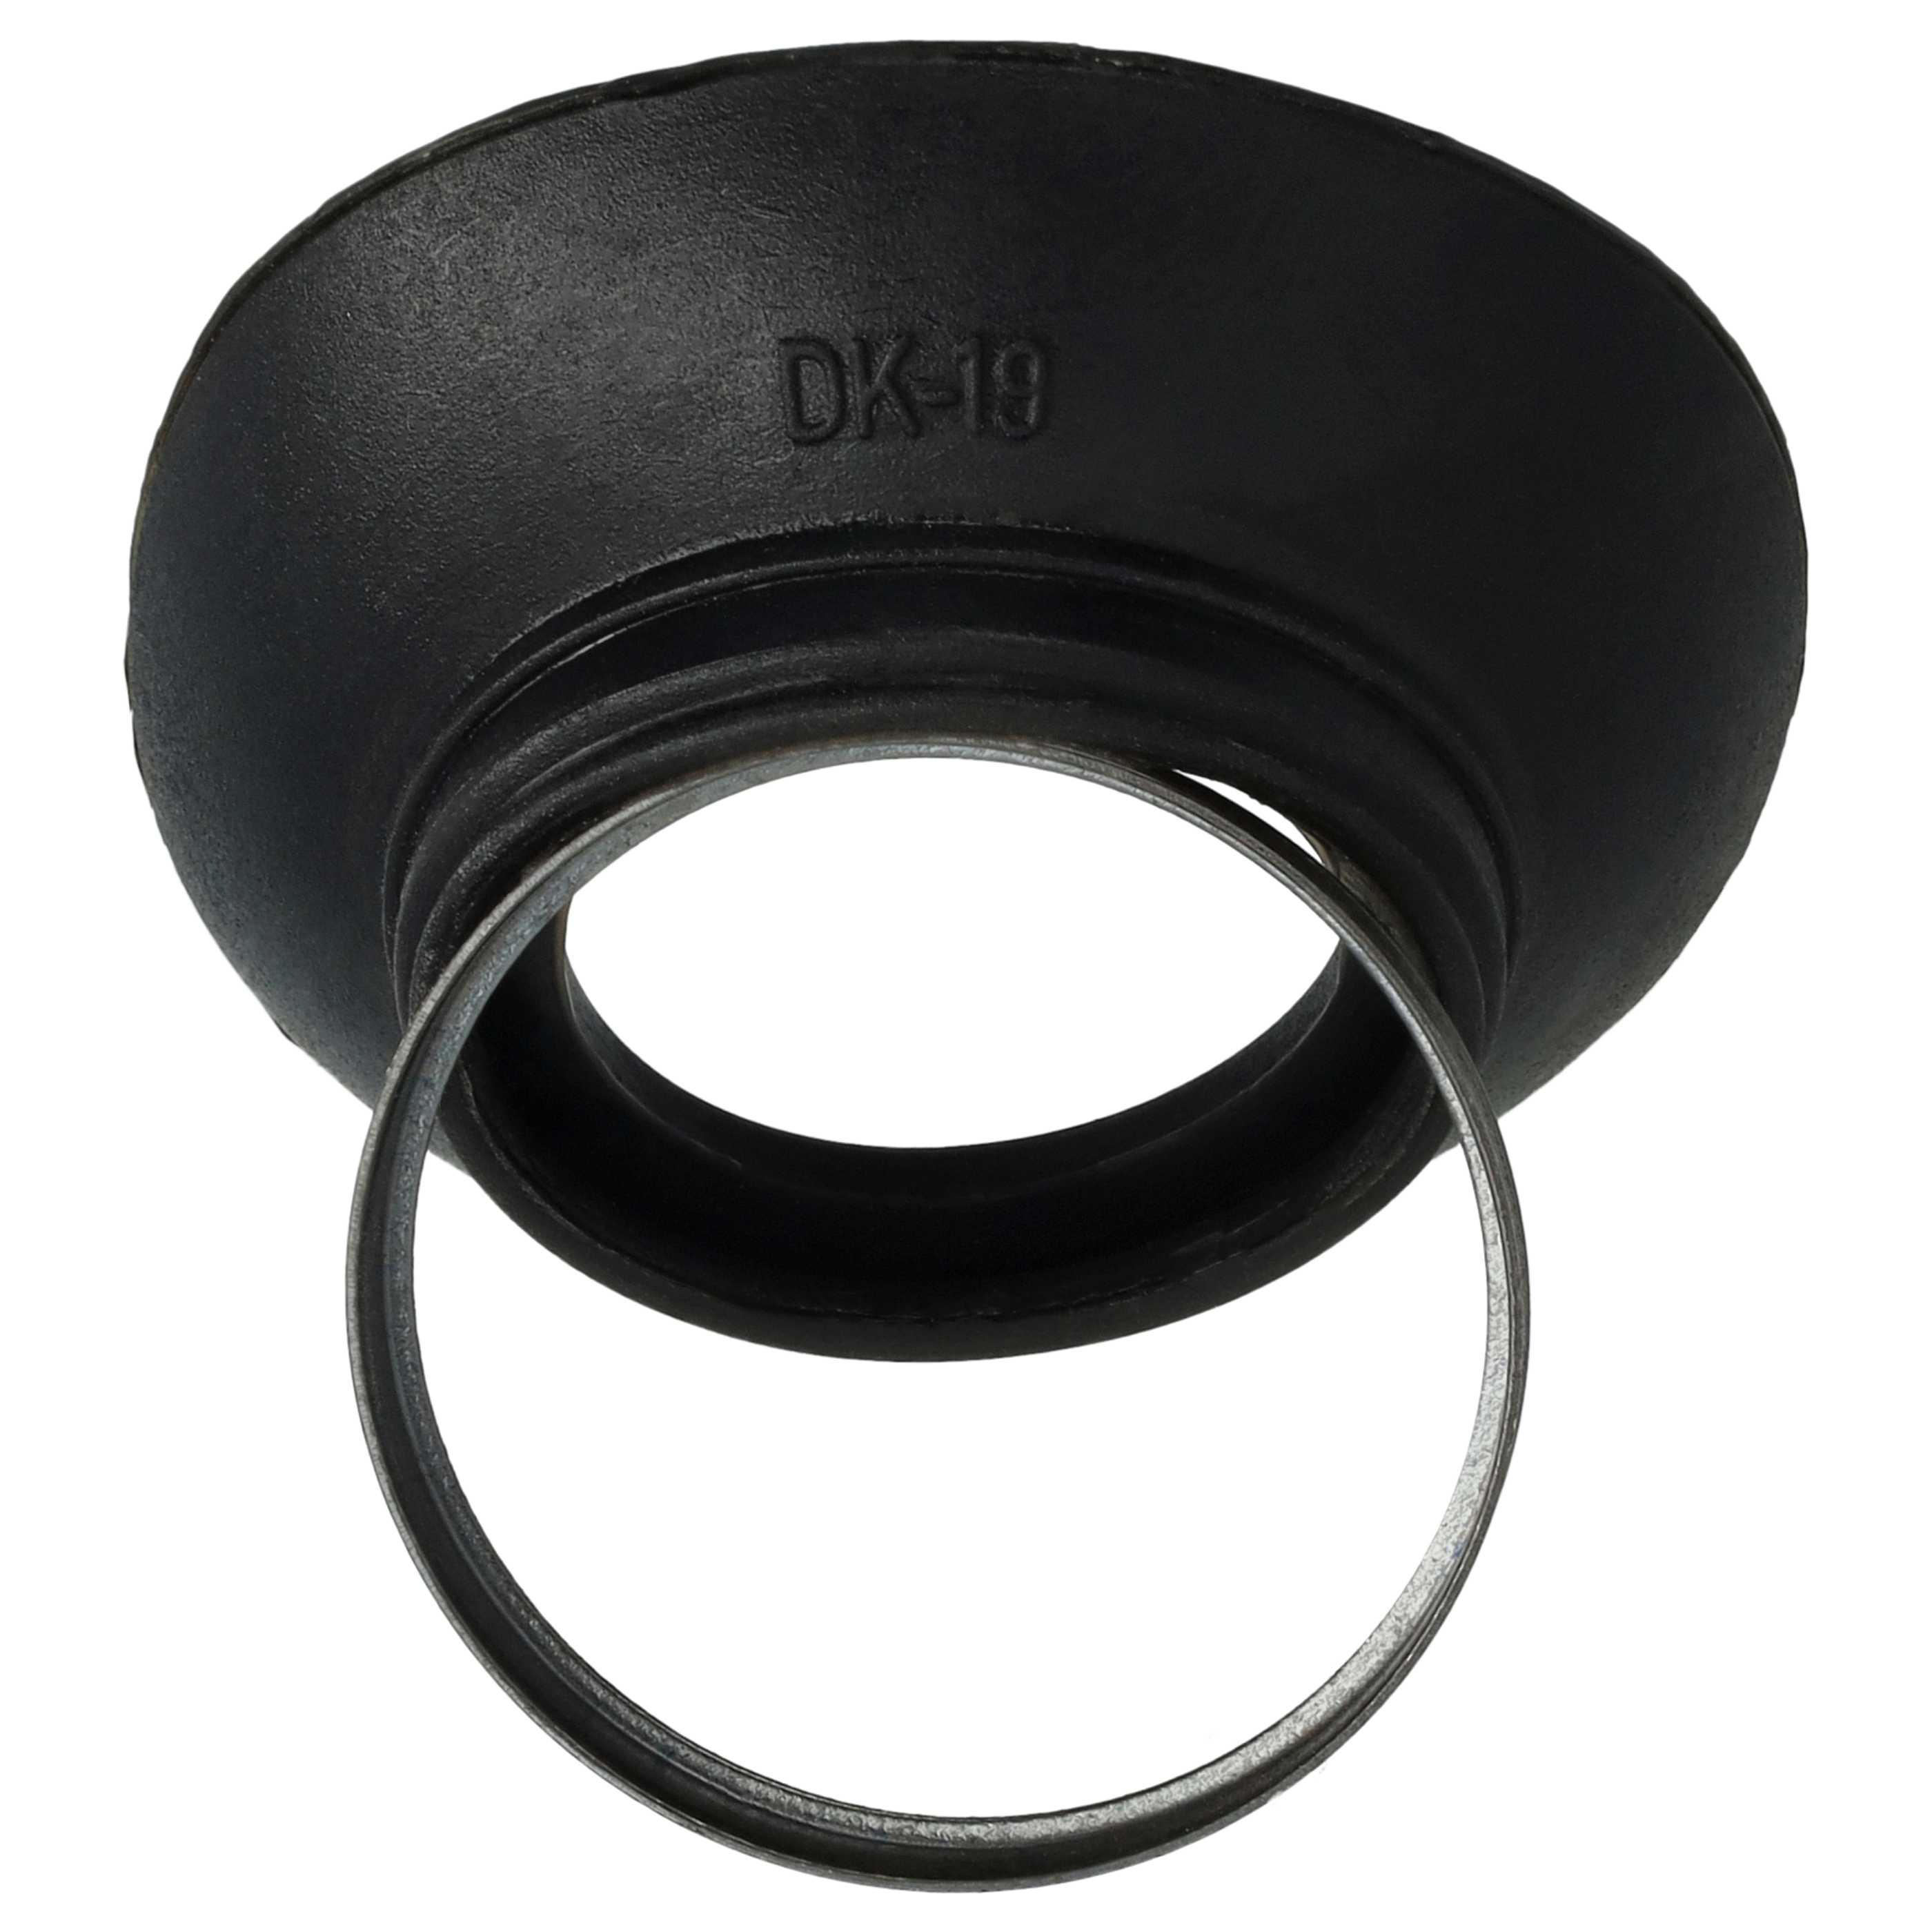 Augenmuschel Sucher als Ersatz für Nikon DK-19 für Nikon D810a u.a., Kunststoff